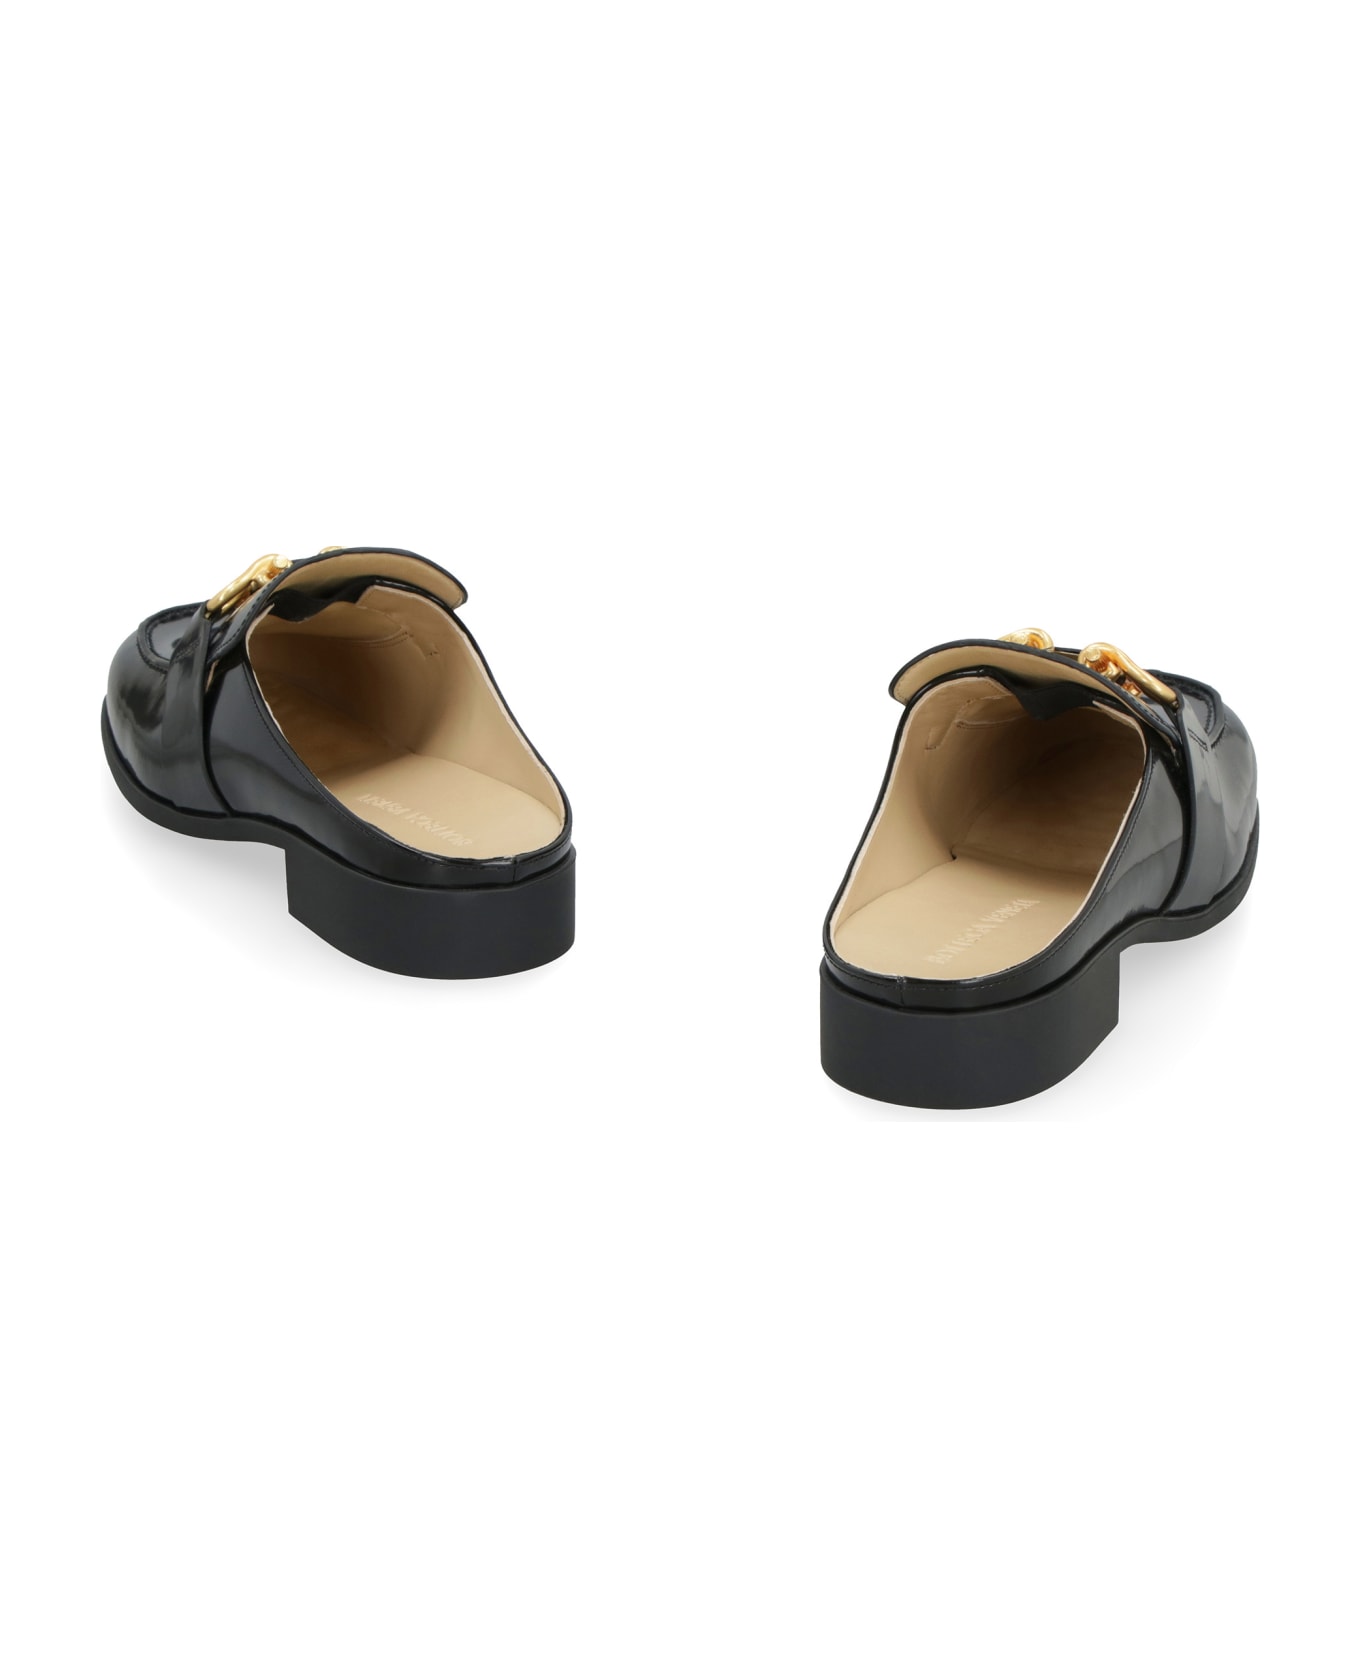 Bottega Veneta Monsieur Leather Loafers - black